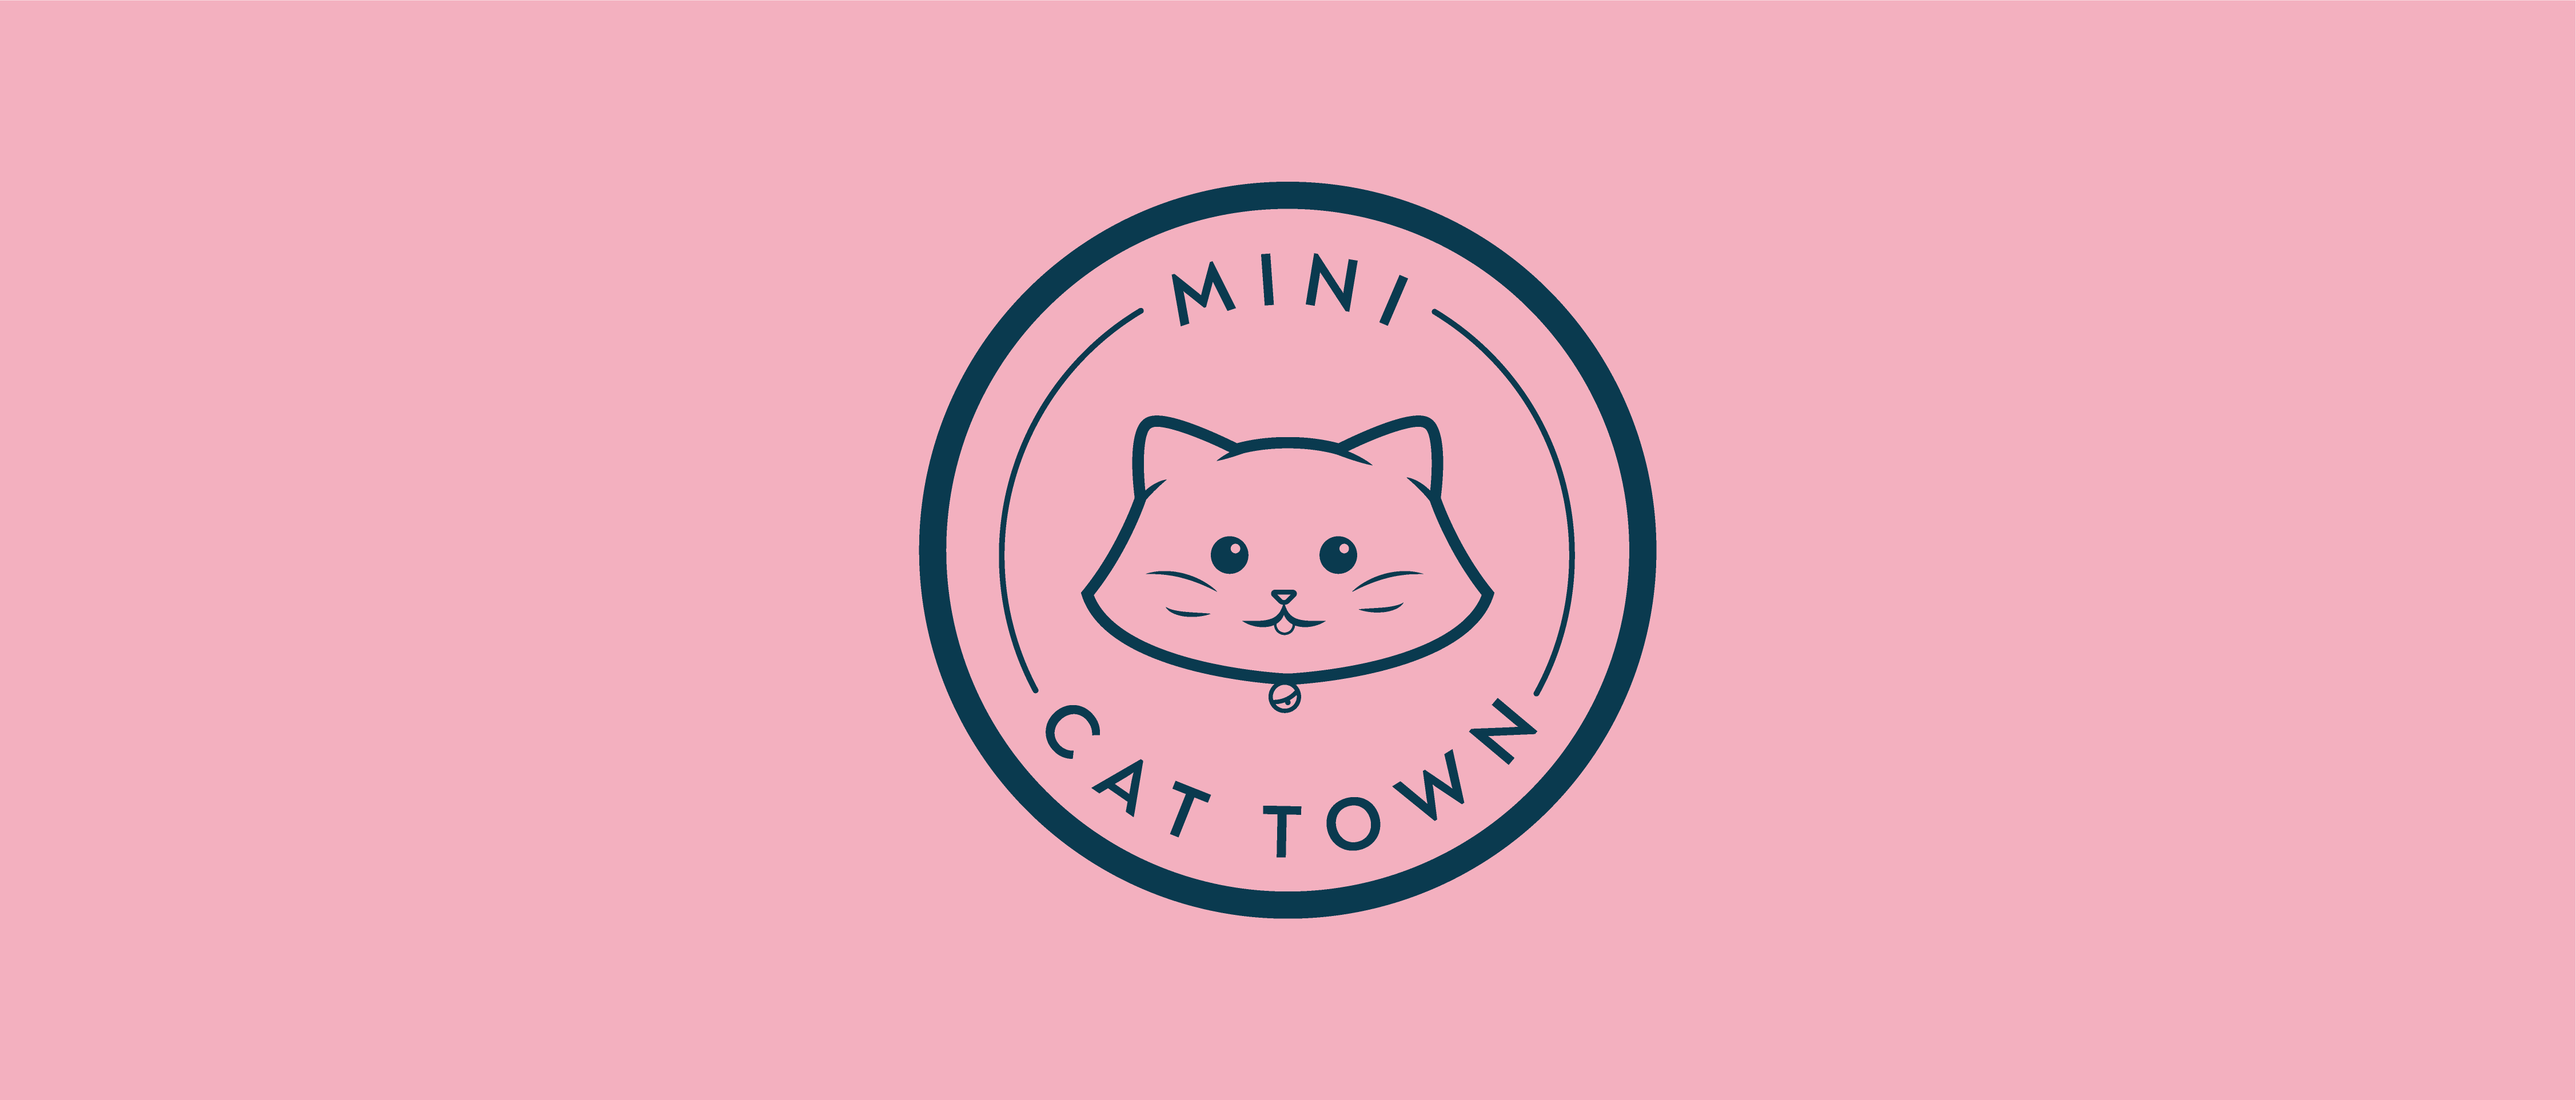 mini cat town-03